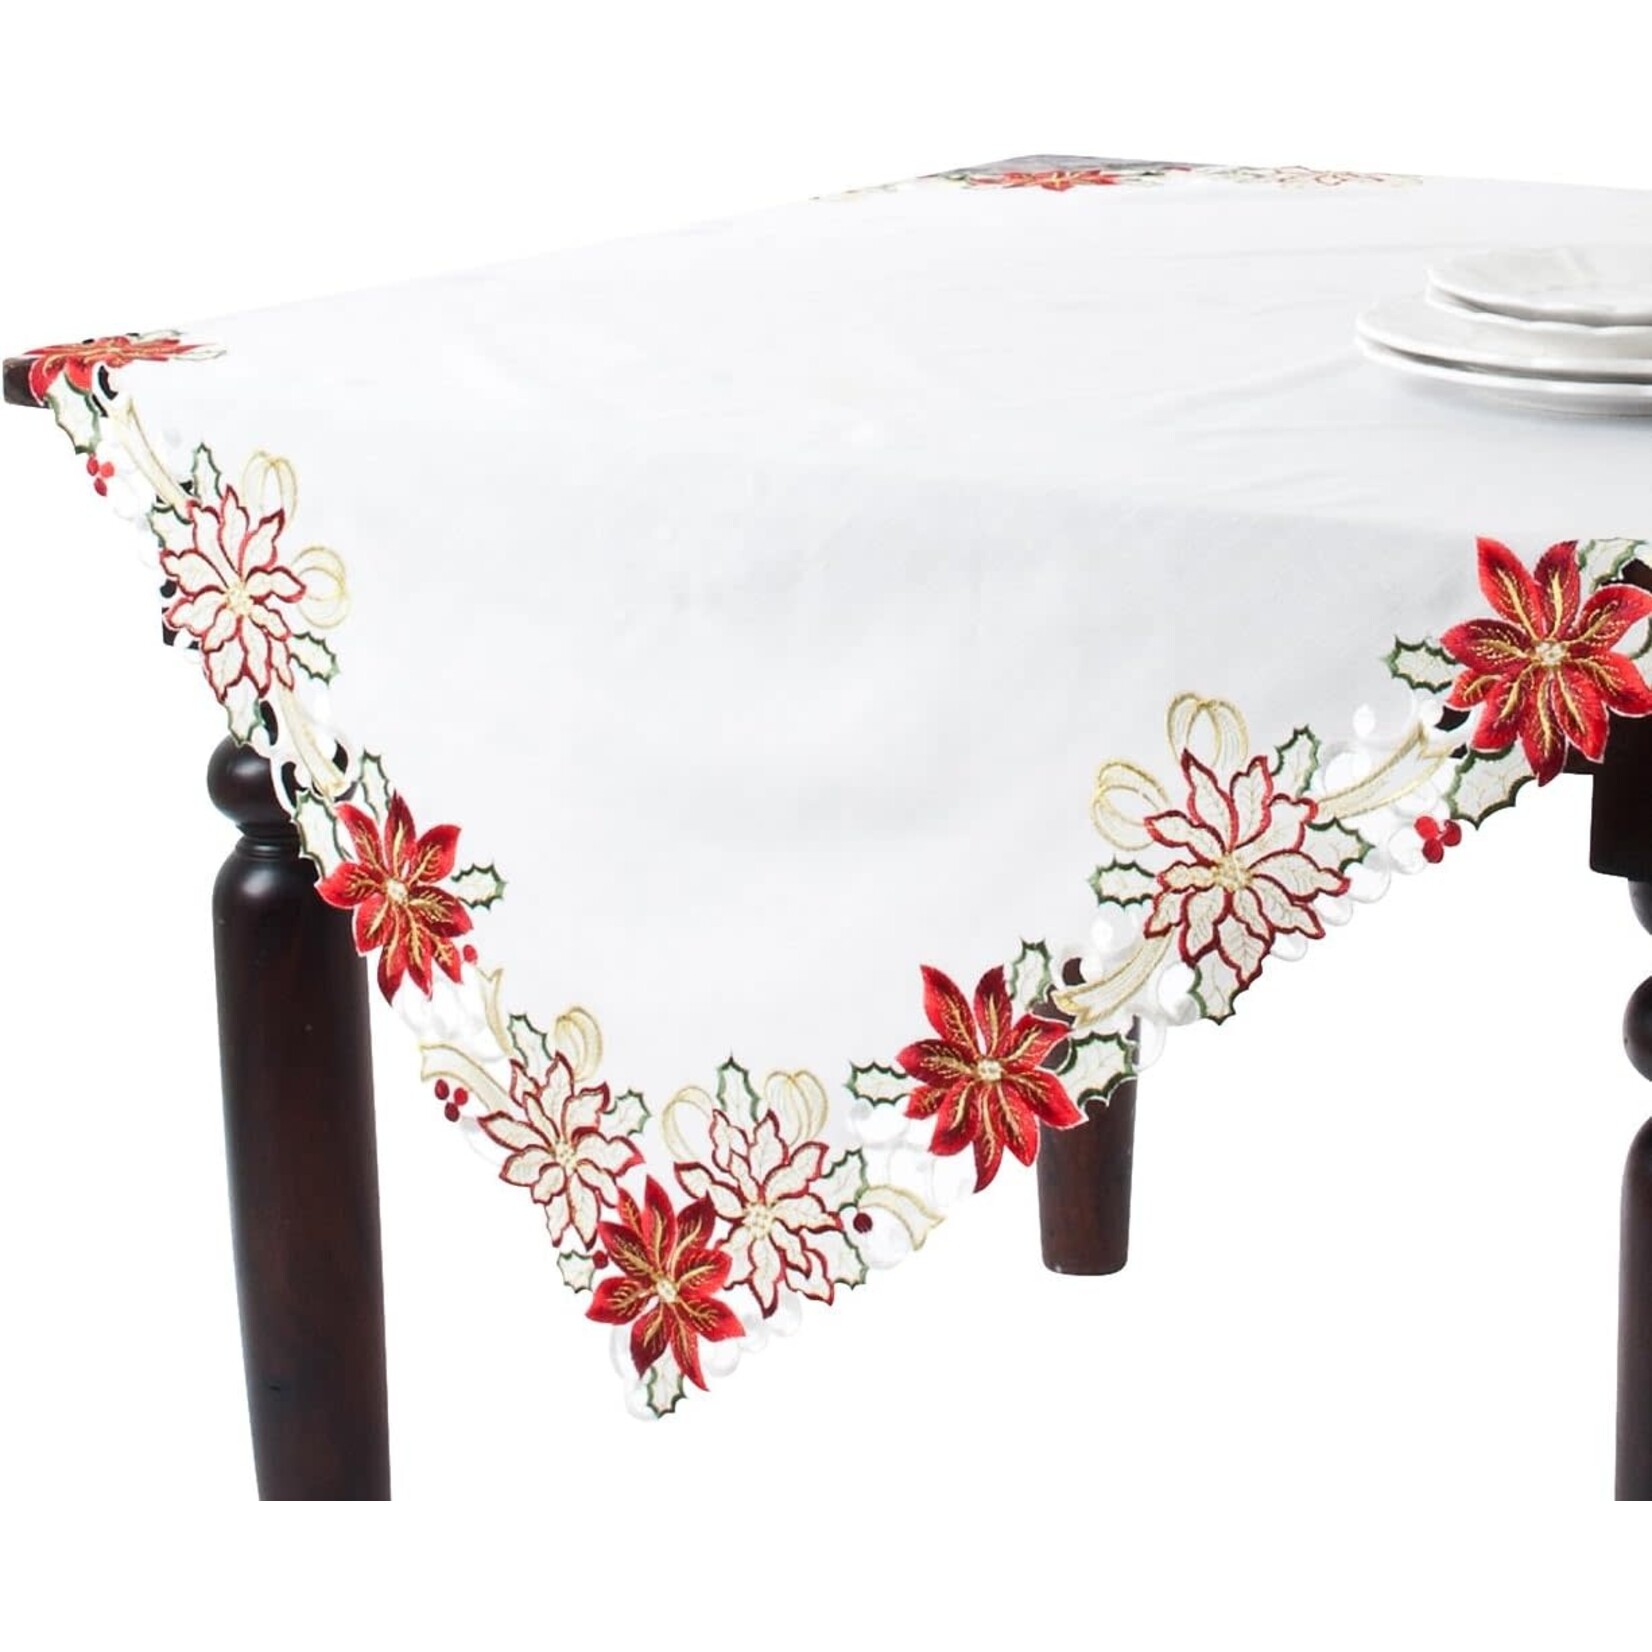 Saro Trading Company Holiday Poinsettia Ivory Tablecloth Topper